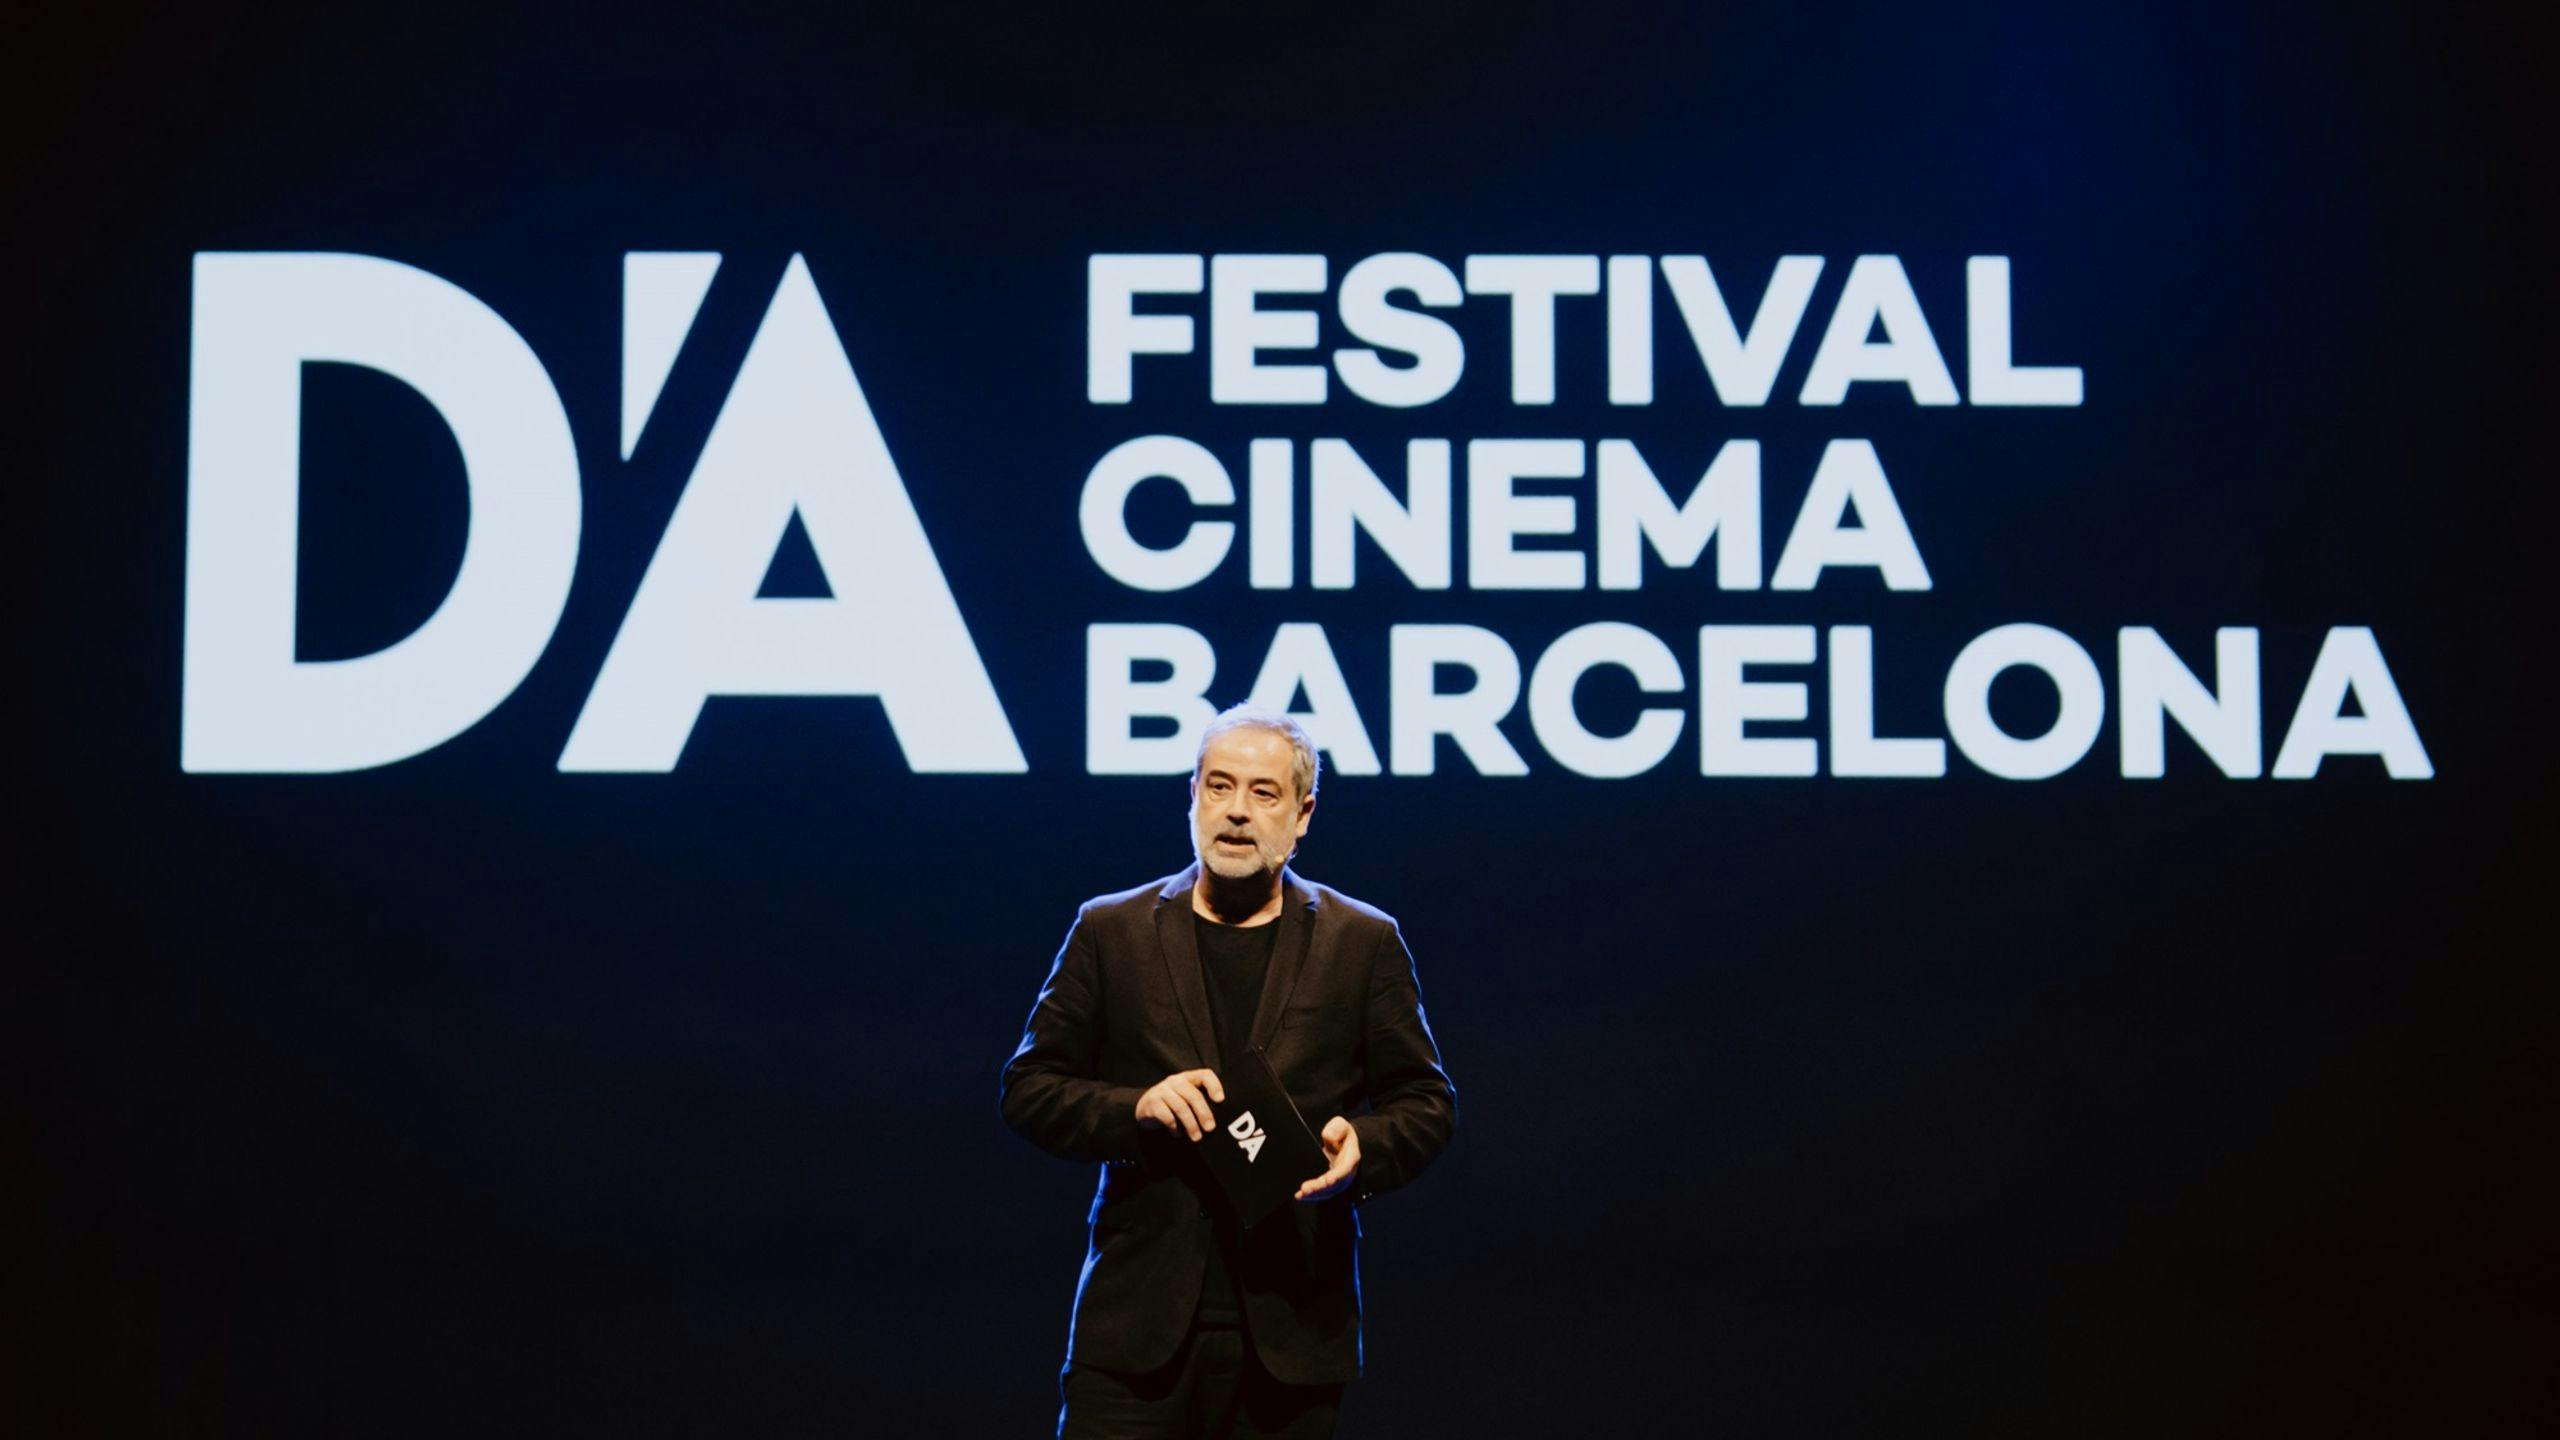 Carlos R. Ríos, director del D'A Festival Cinema Barcelona, en la gala de inauguración de la edición 2024